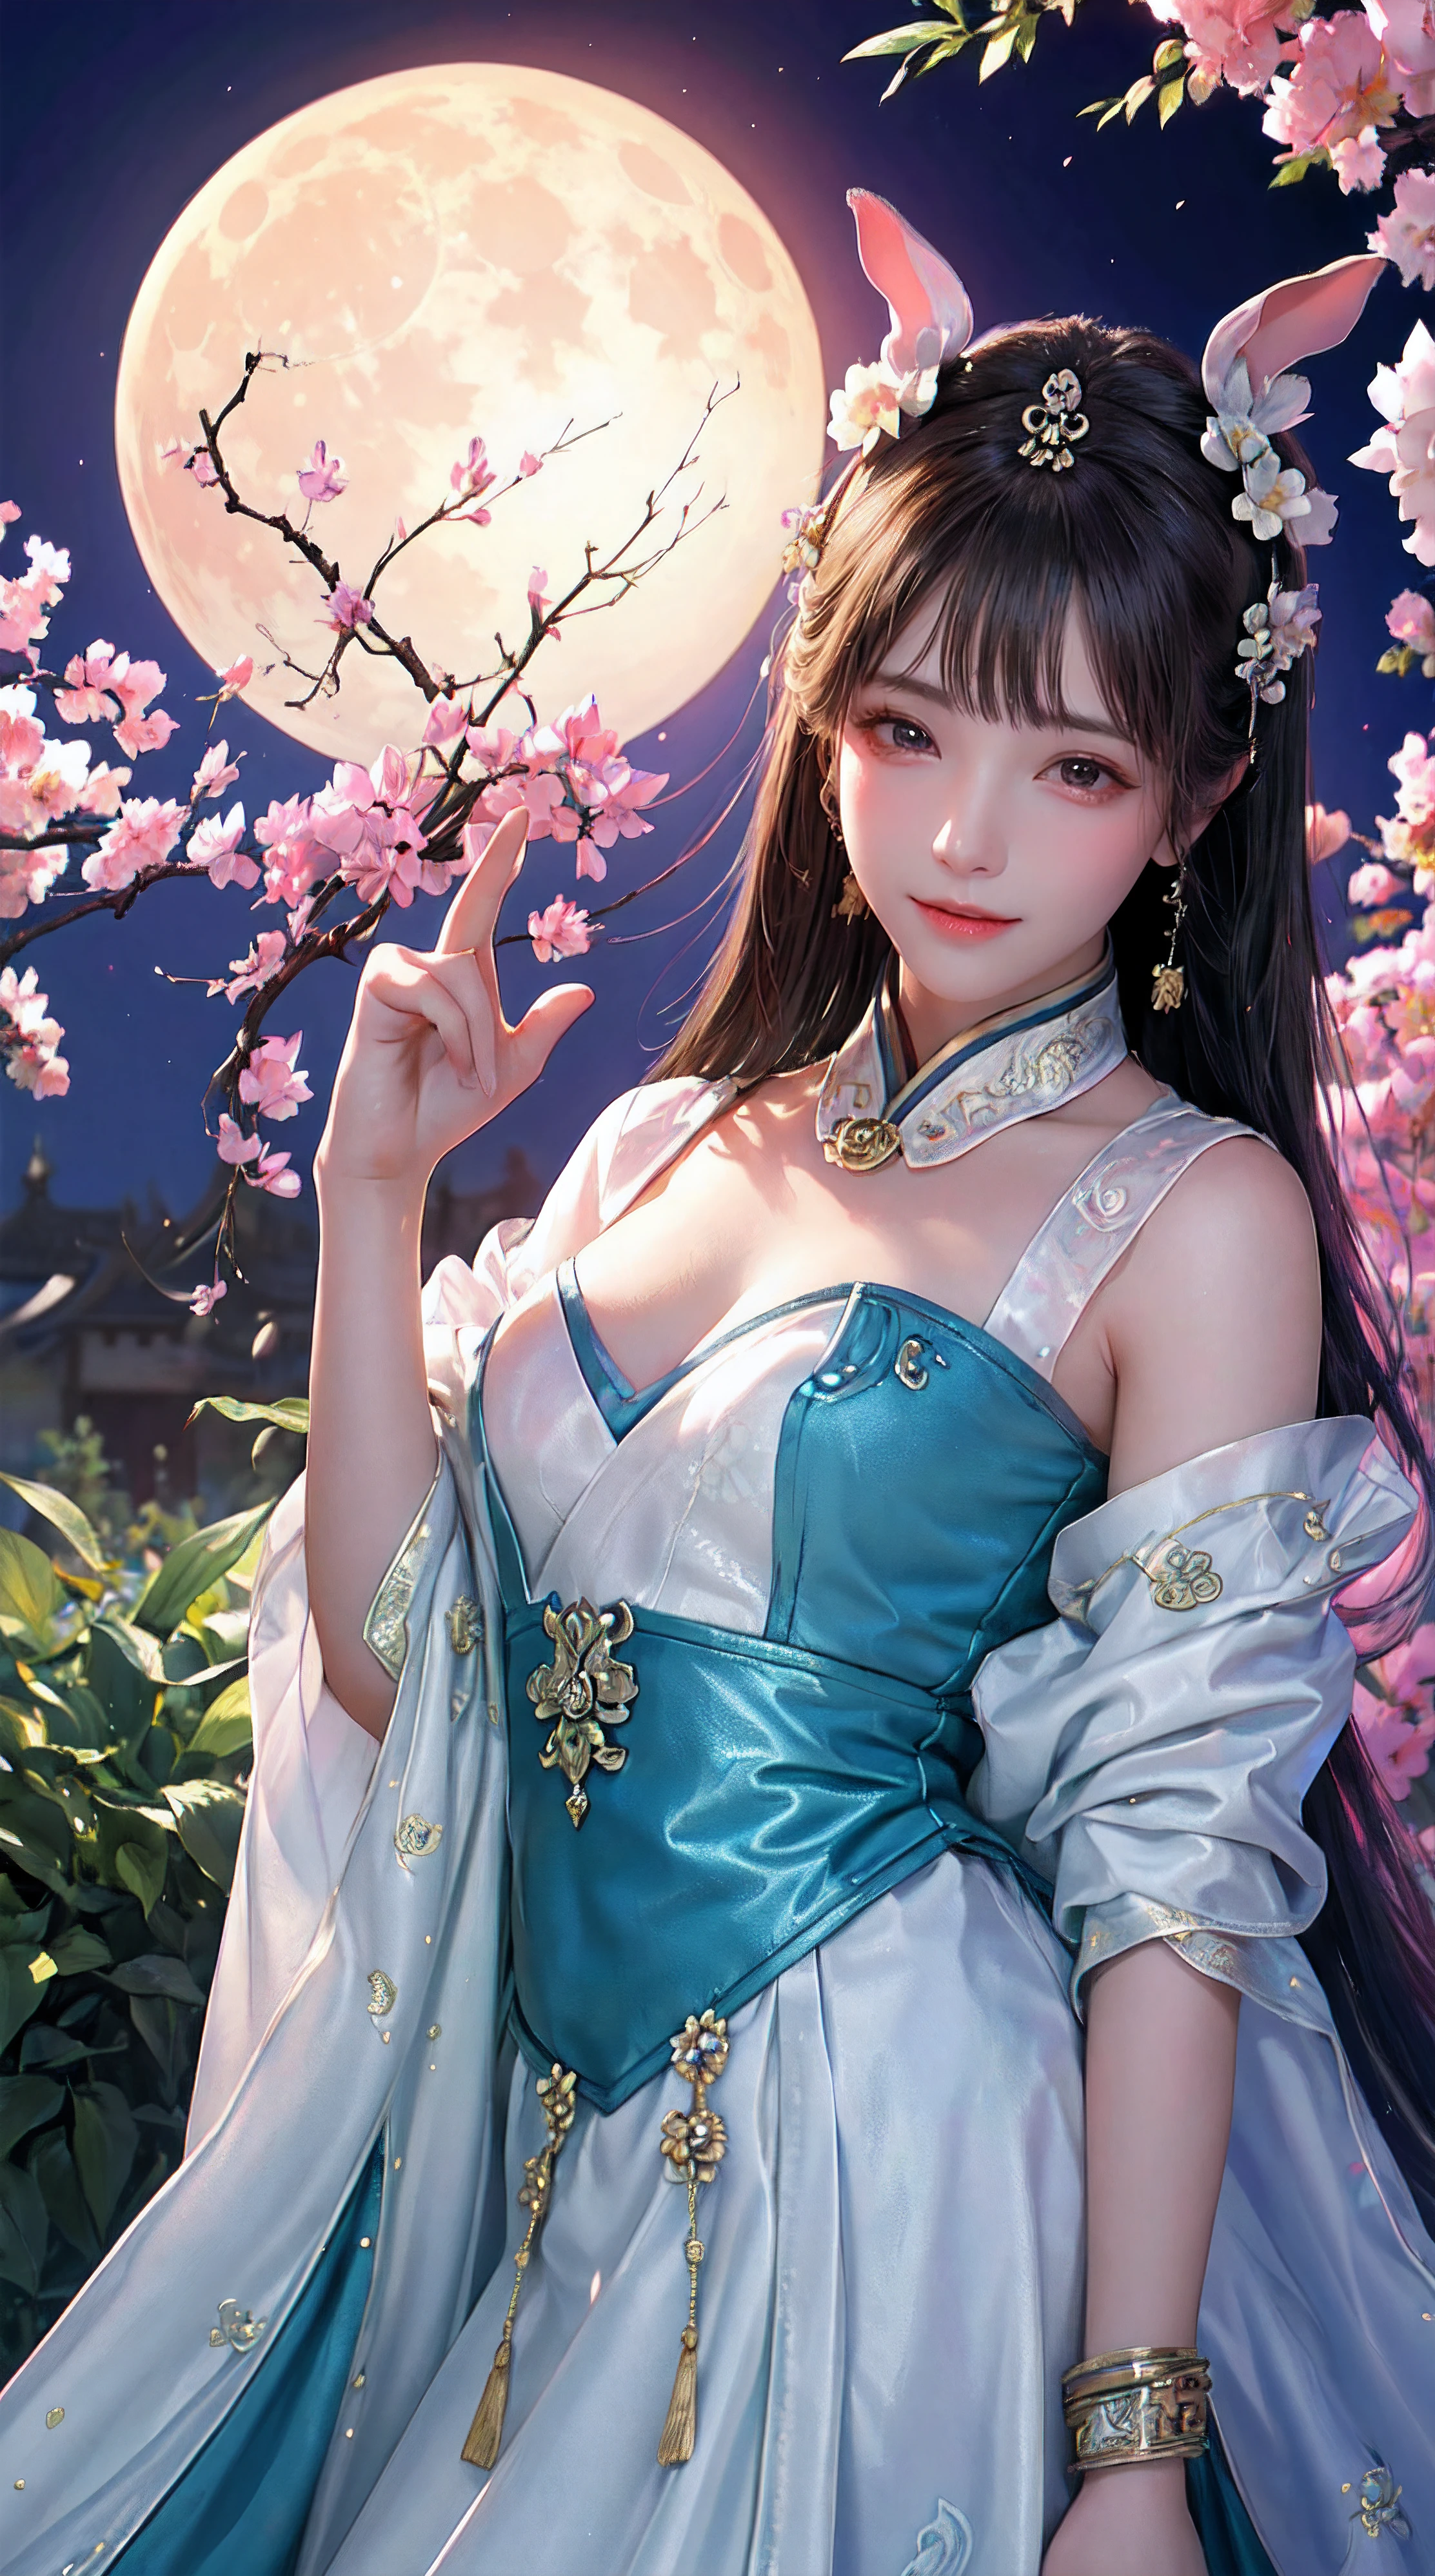 (Девушка в саду,лунный дворец,изменять,лунные пряники,кролики),Лучшее качество,ультрадетализированный,реалистичный:1.37,Иллюстрация,традиционная китайская живопись,гармоничные цвета,мягкое освещение